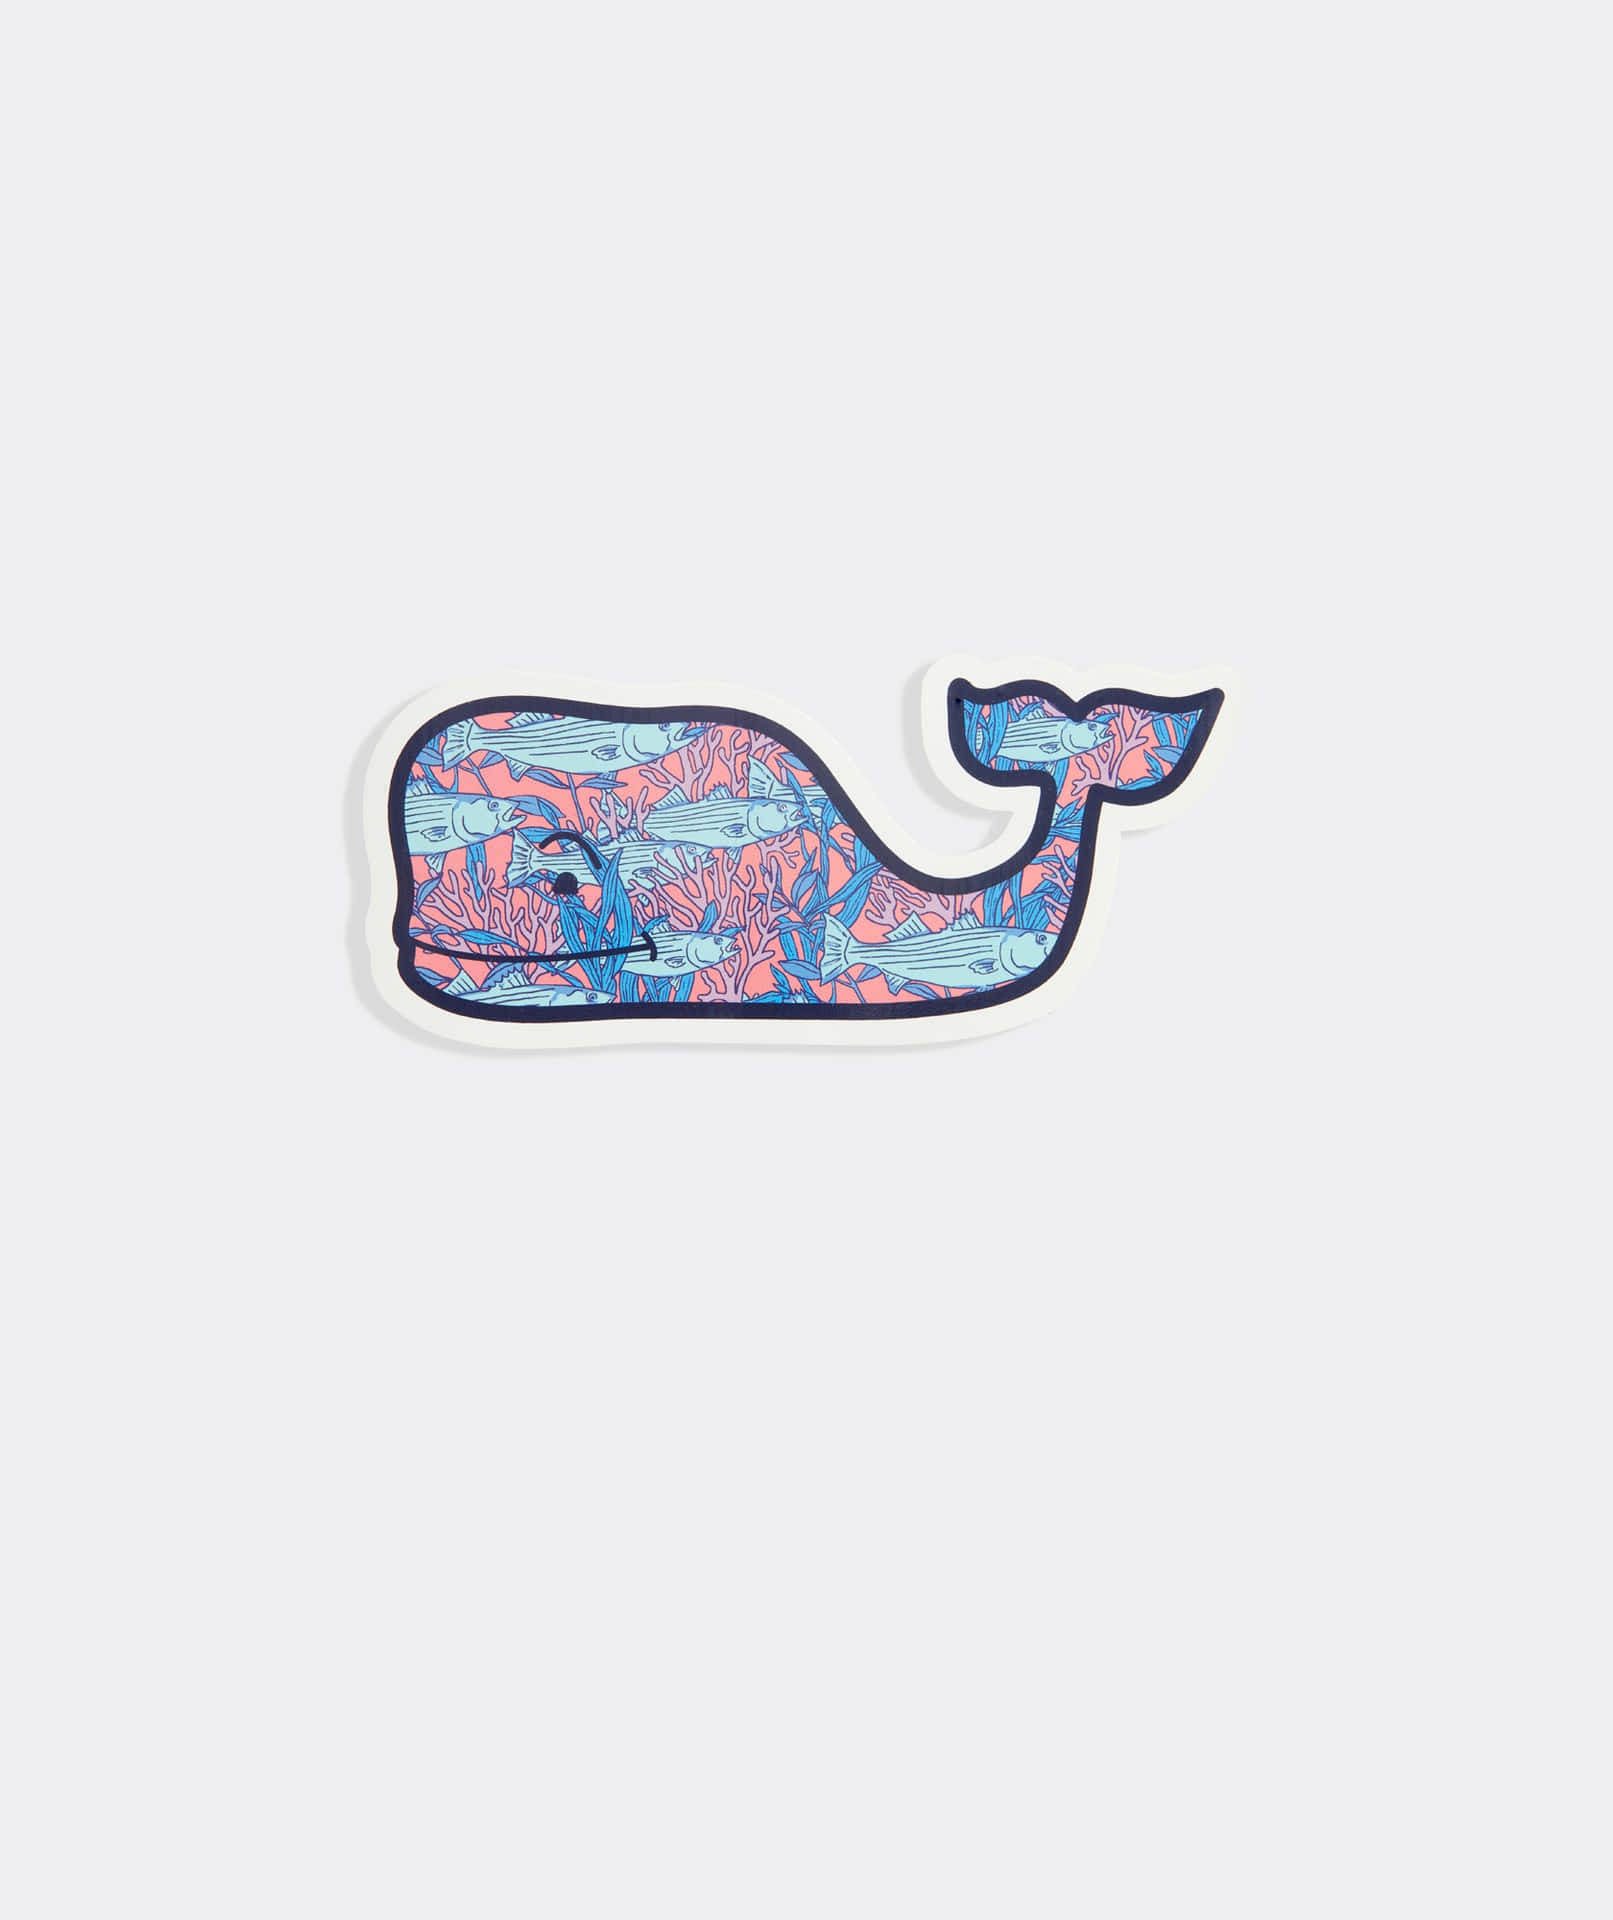 Einwalfisch-aufkleber Mit Pinken Und Blauen Designs. Wallpaper